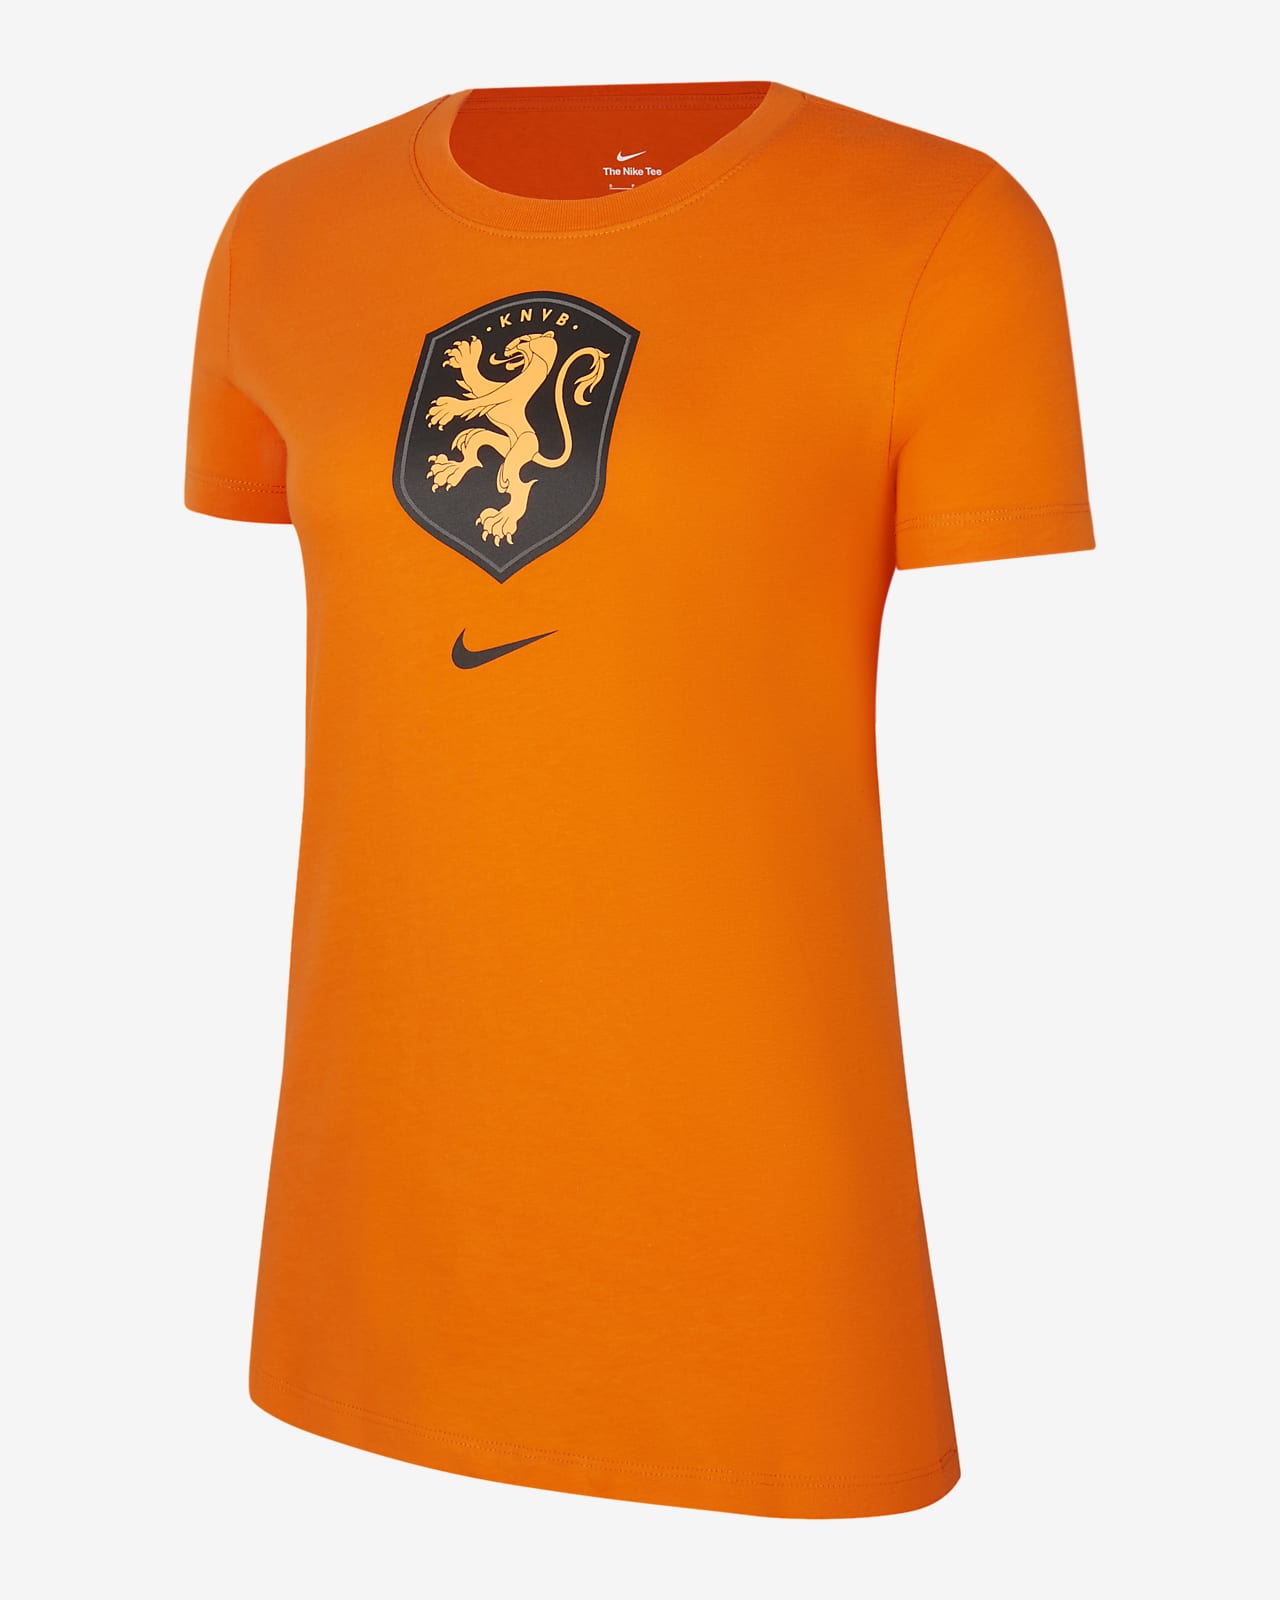 Netherlands Women's Football T-Shirt. Nike CH